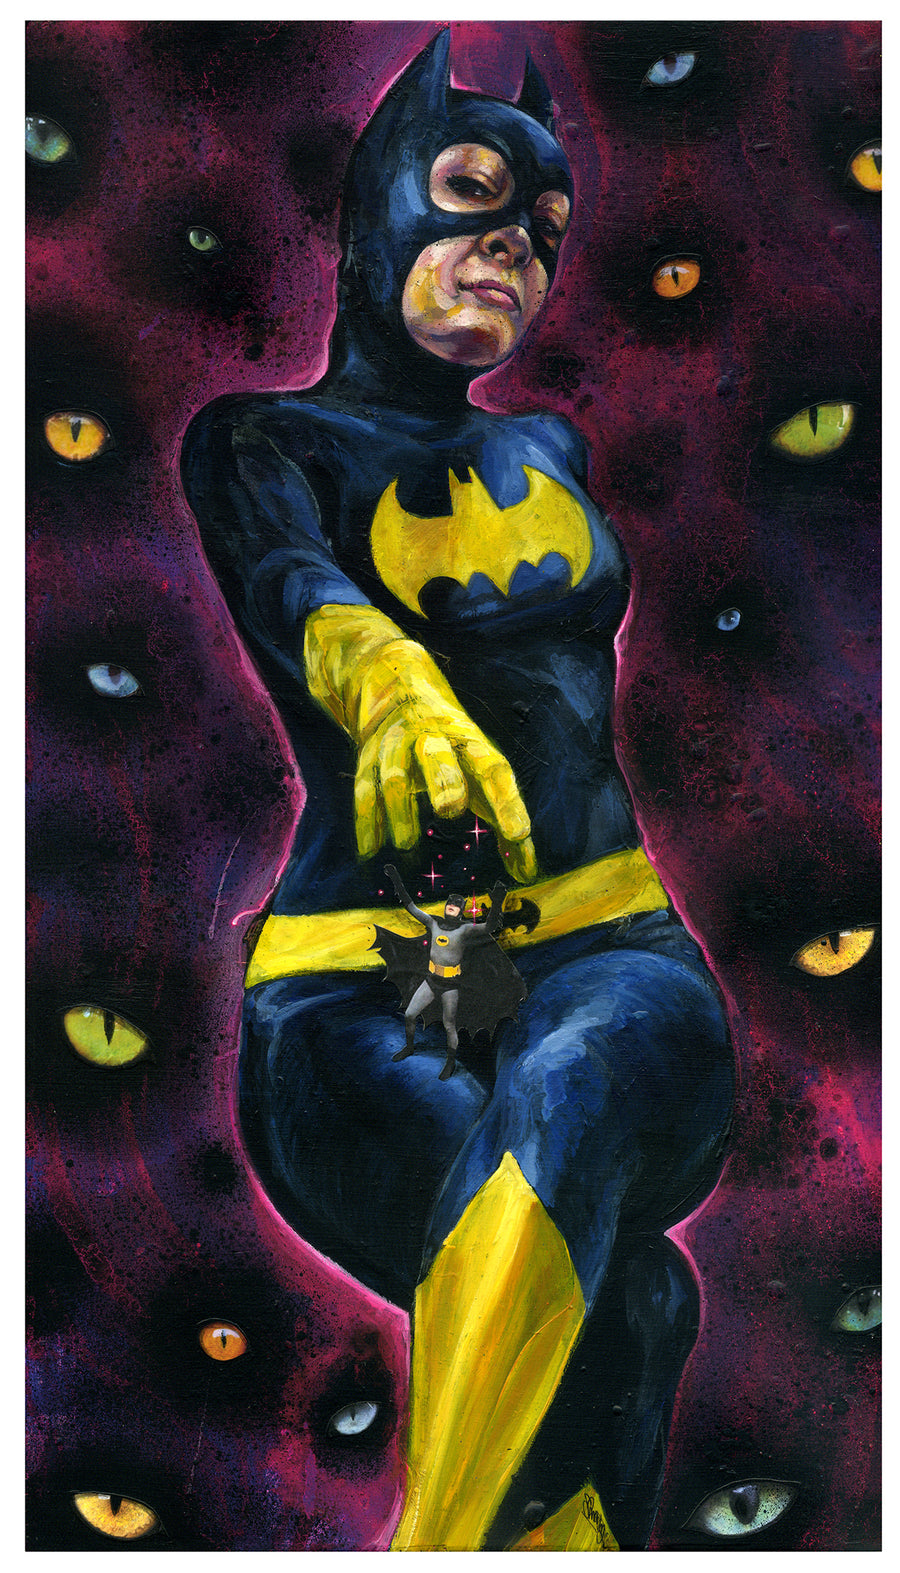 Bat nip ~ Original Painting